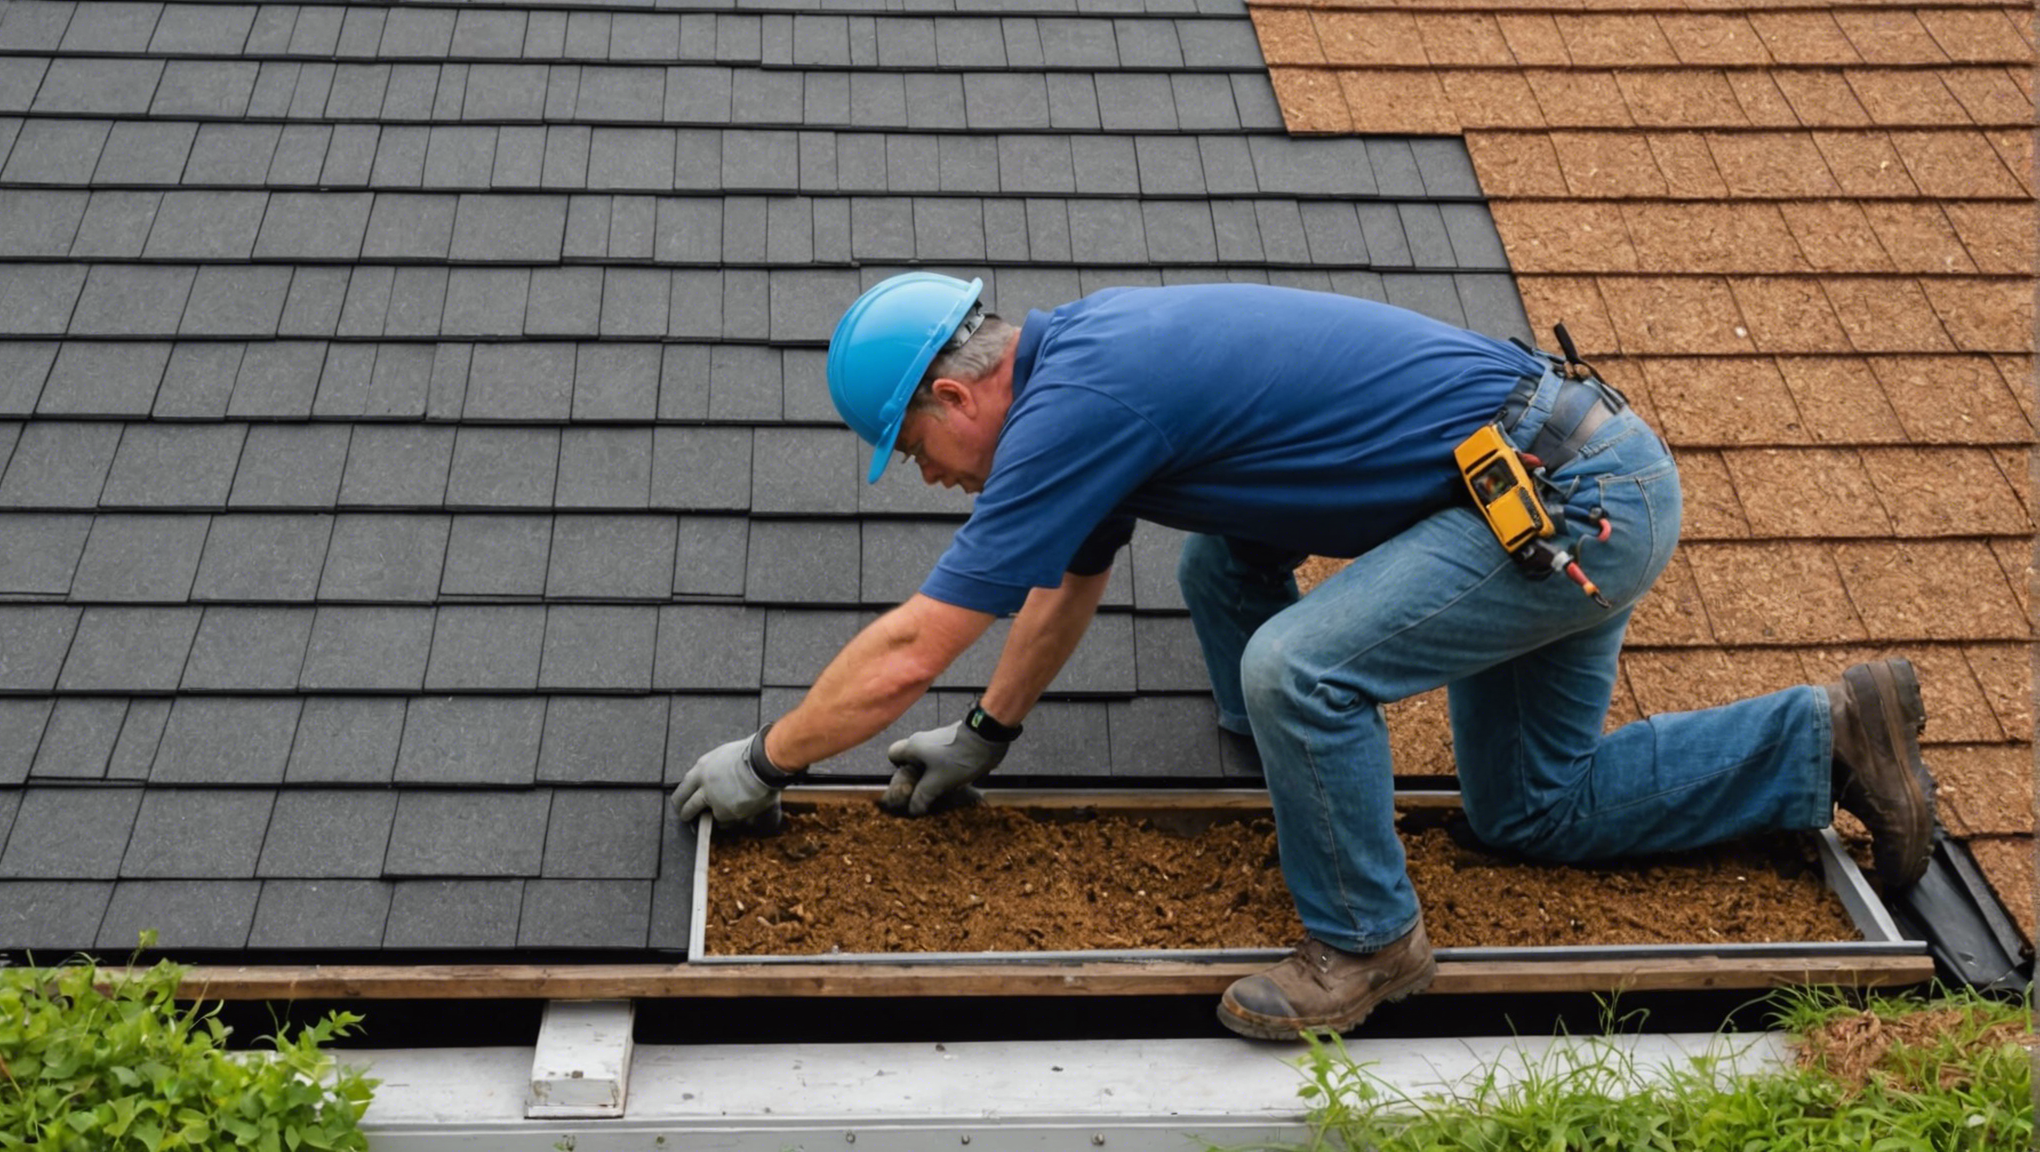 découvrez comment rénover efficacement votre toiture avec nos conseils pratiques. agissez pour assurer la longévité et la performance de votre toit.